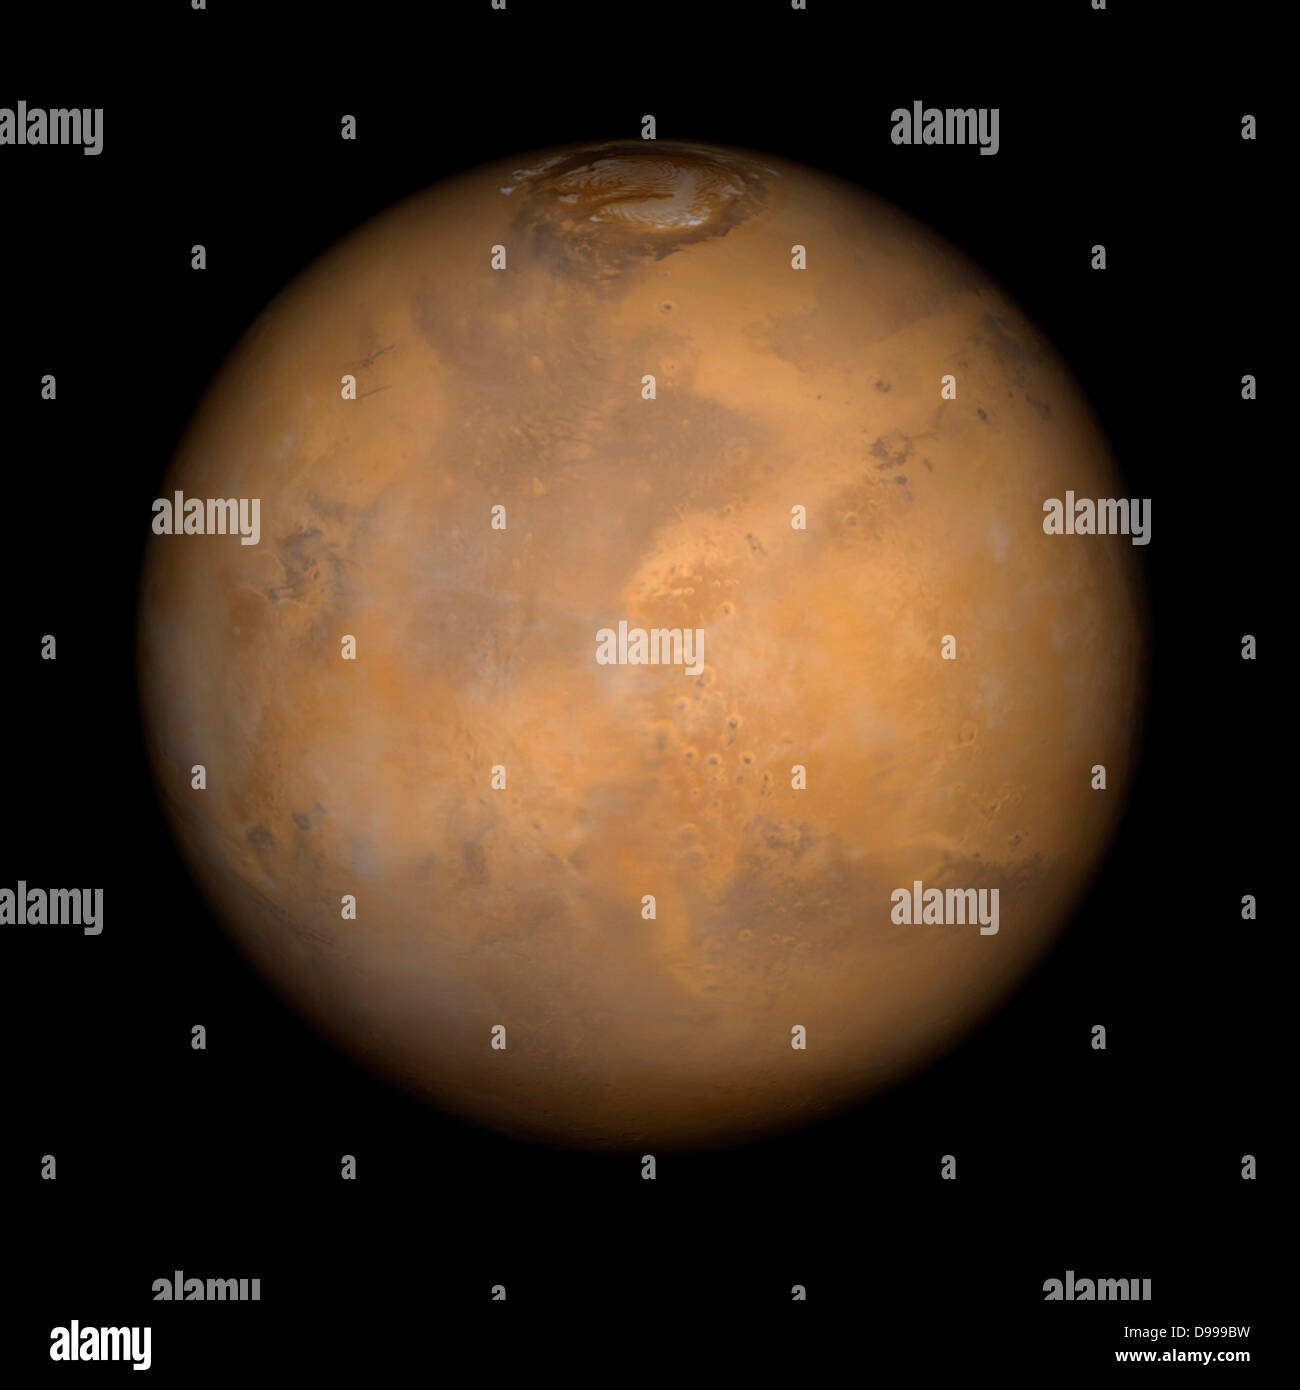 Dieser Mars Global Surveyor Mars Orbiter Camera Bild des roten Planeten zeigt die Region, die Ares Vallis und die chryse Ebenen, auf denen sowohl Mars Pathfinder und die Viking 1 in den Jahren 1997 und 1976 gelandet. Stockfoto